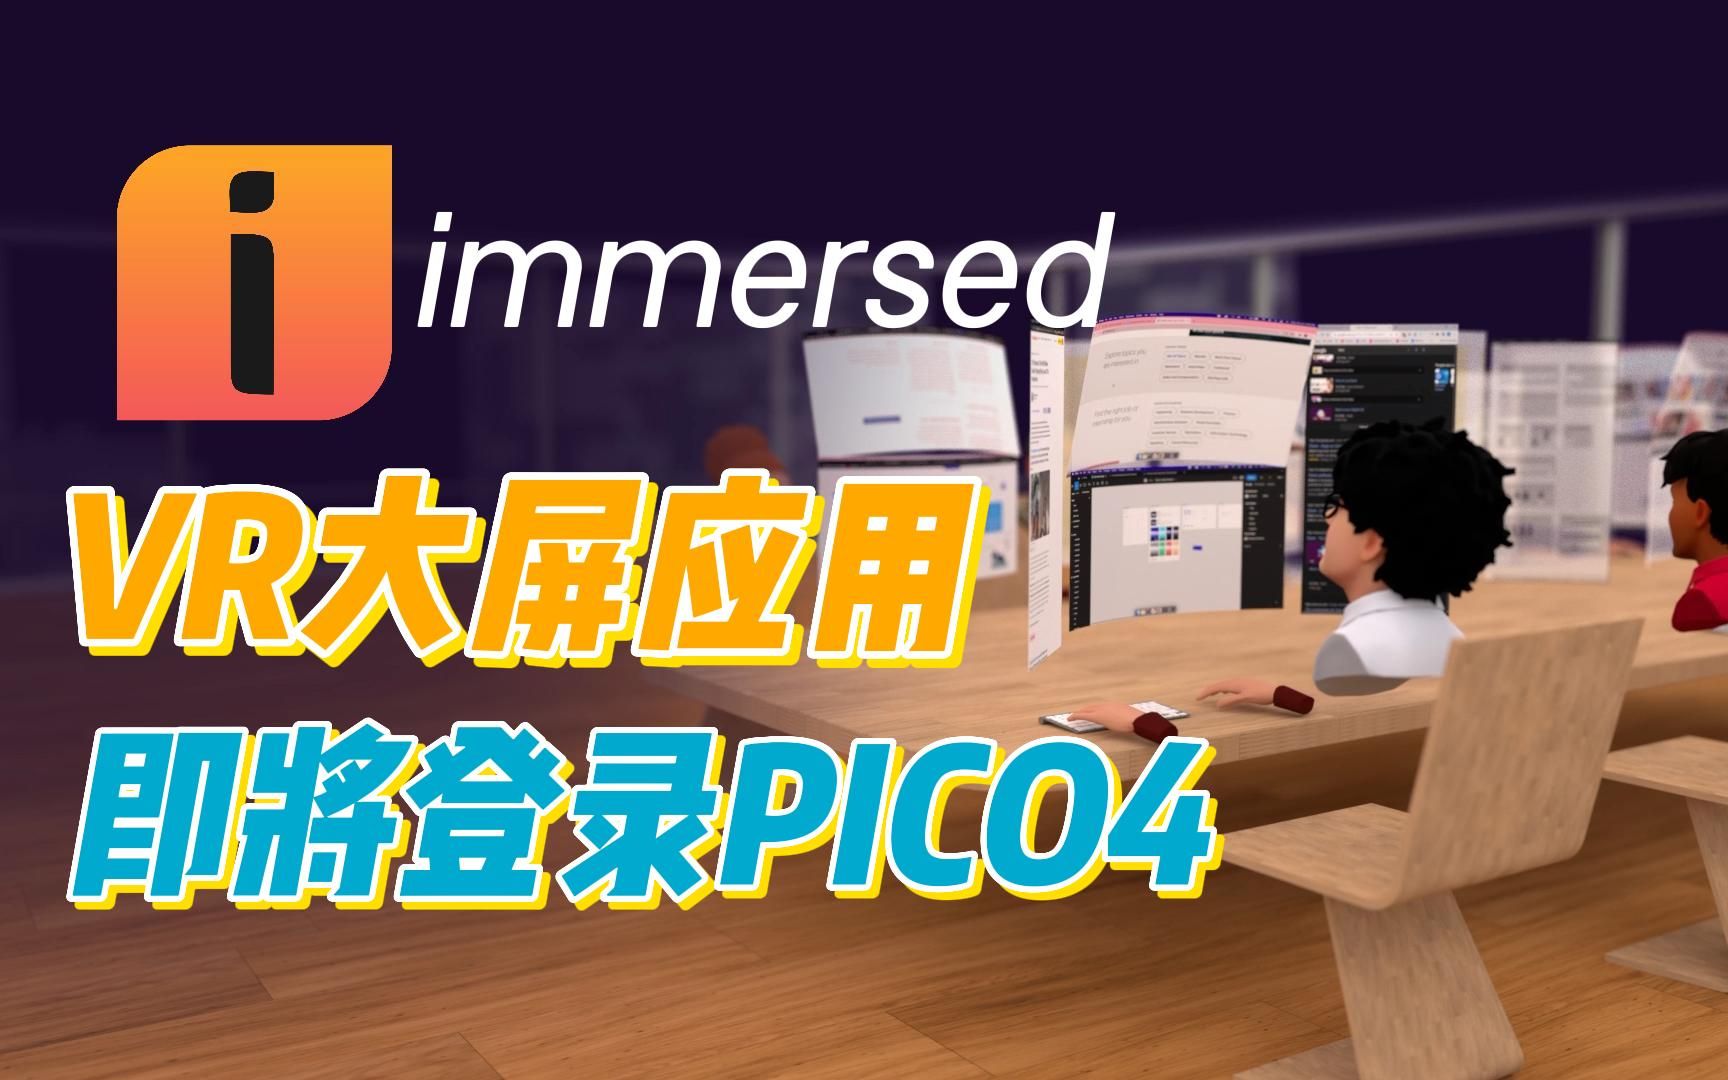 VR大屏社交生产力应用Immersed即将登录Pico4！实测后只能说：艾玛真香！